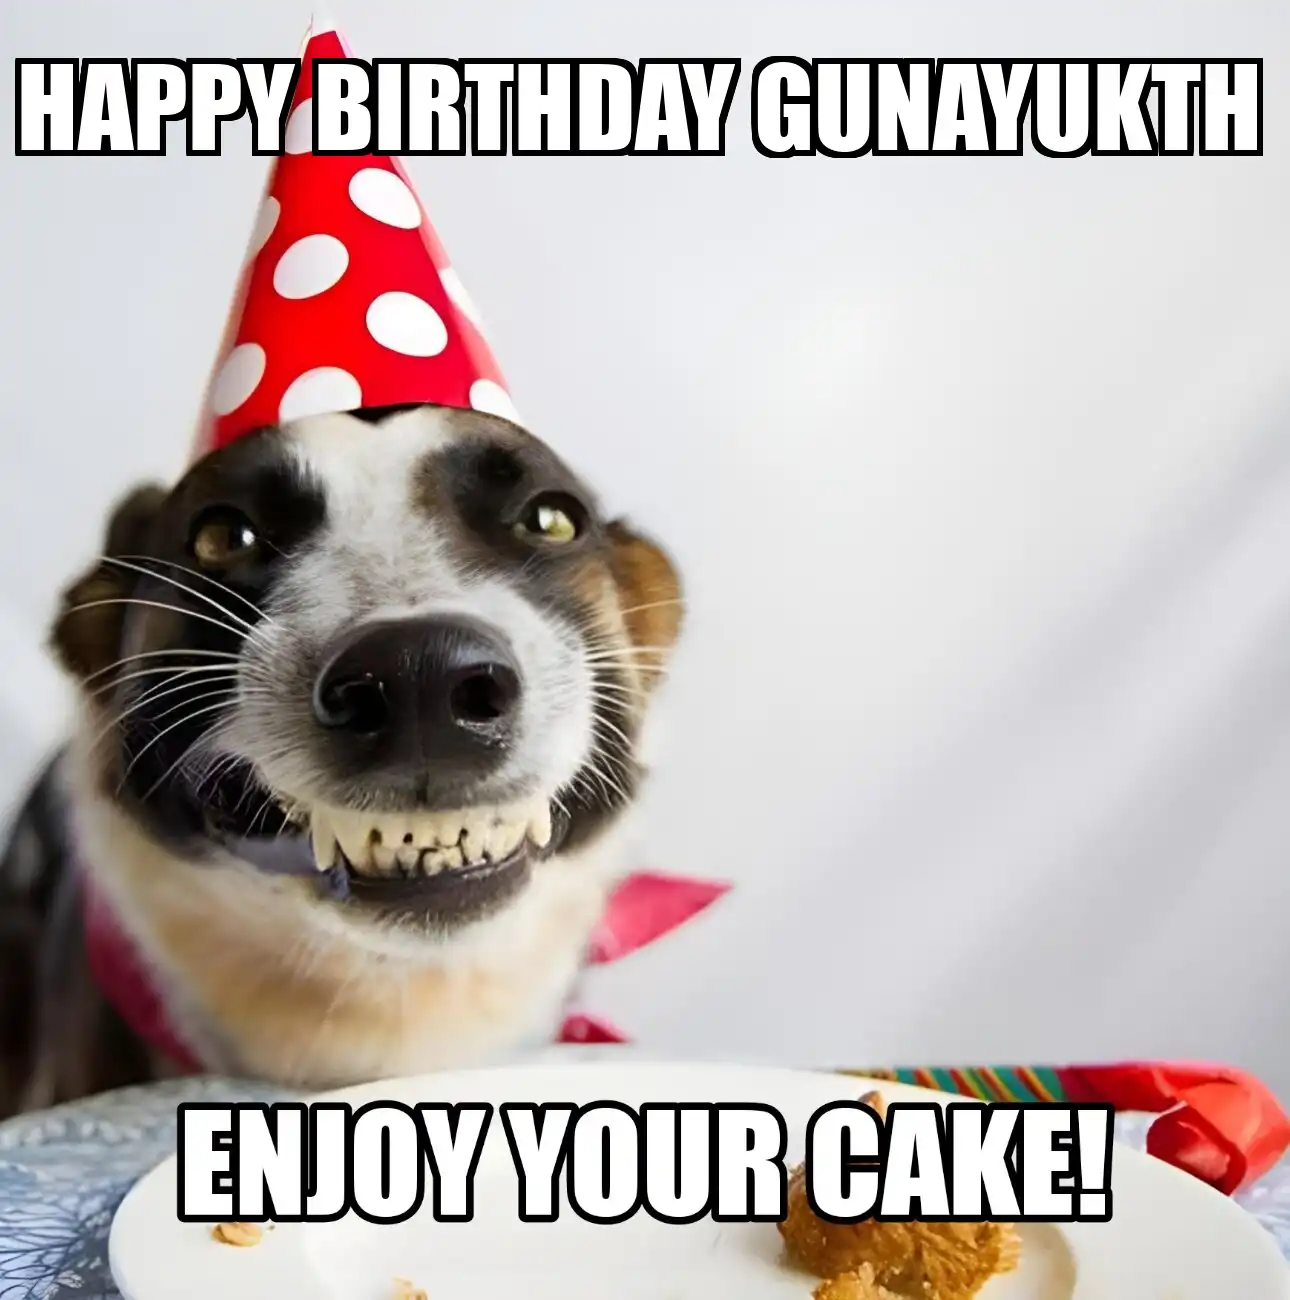 Happy Birthday Gunayukth Enjoy Your Cake Dog Meme